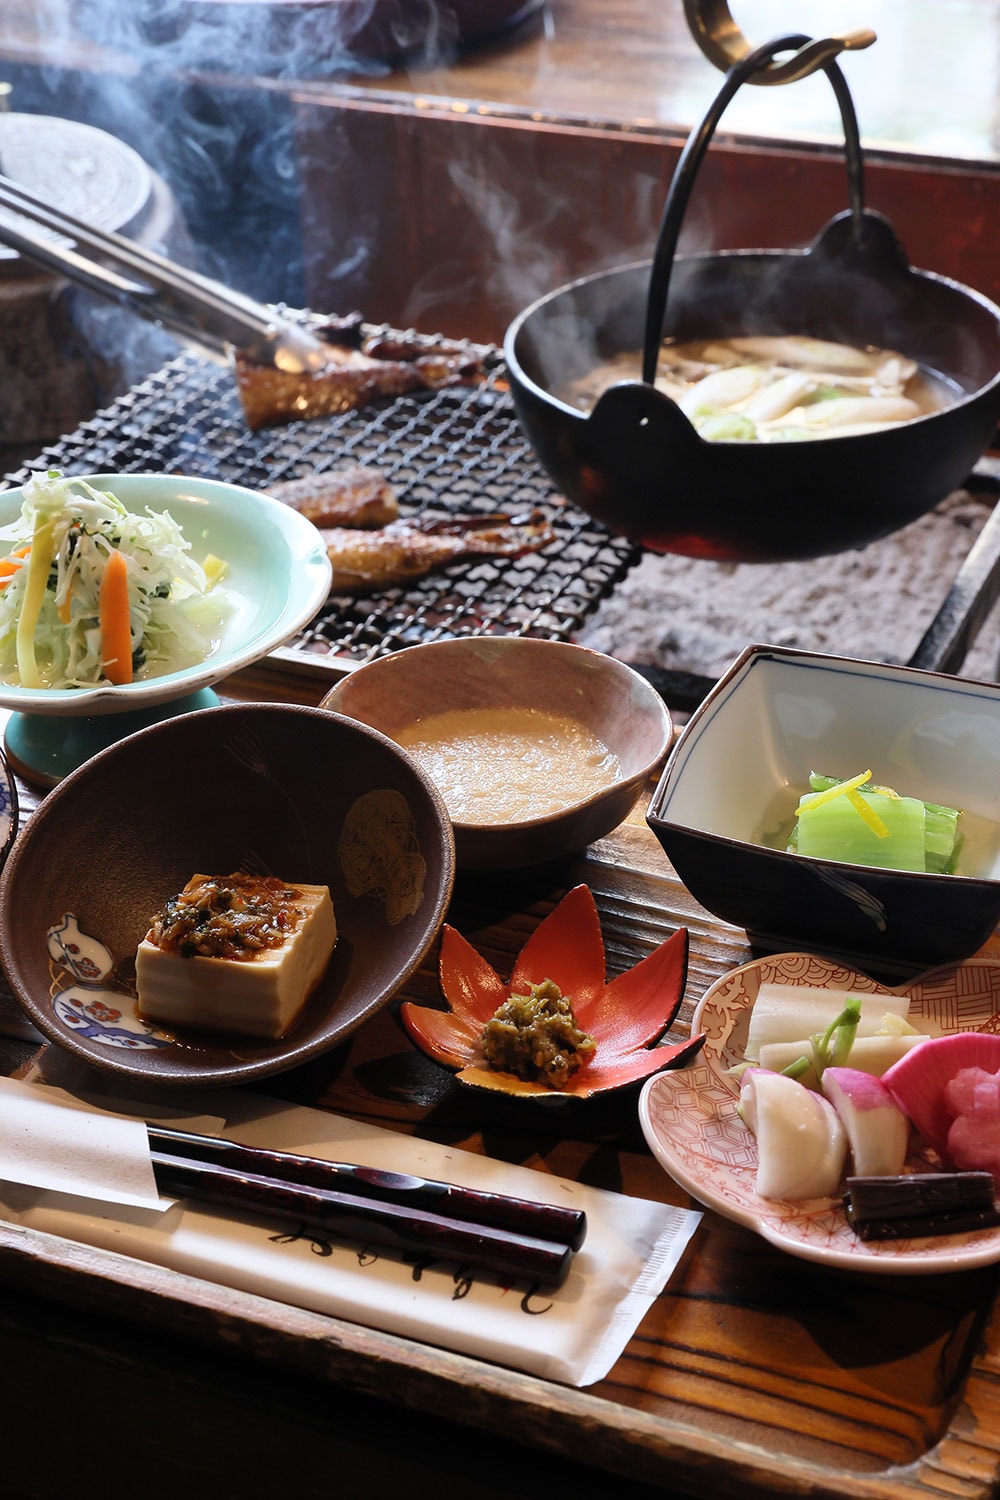 鯖の文化干しは無添加。味噌汁をはじめ朝食では四季折々、旬の食材がふんだんに提供される。